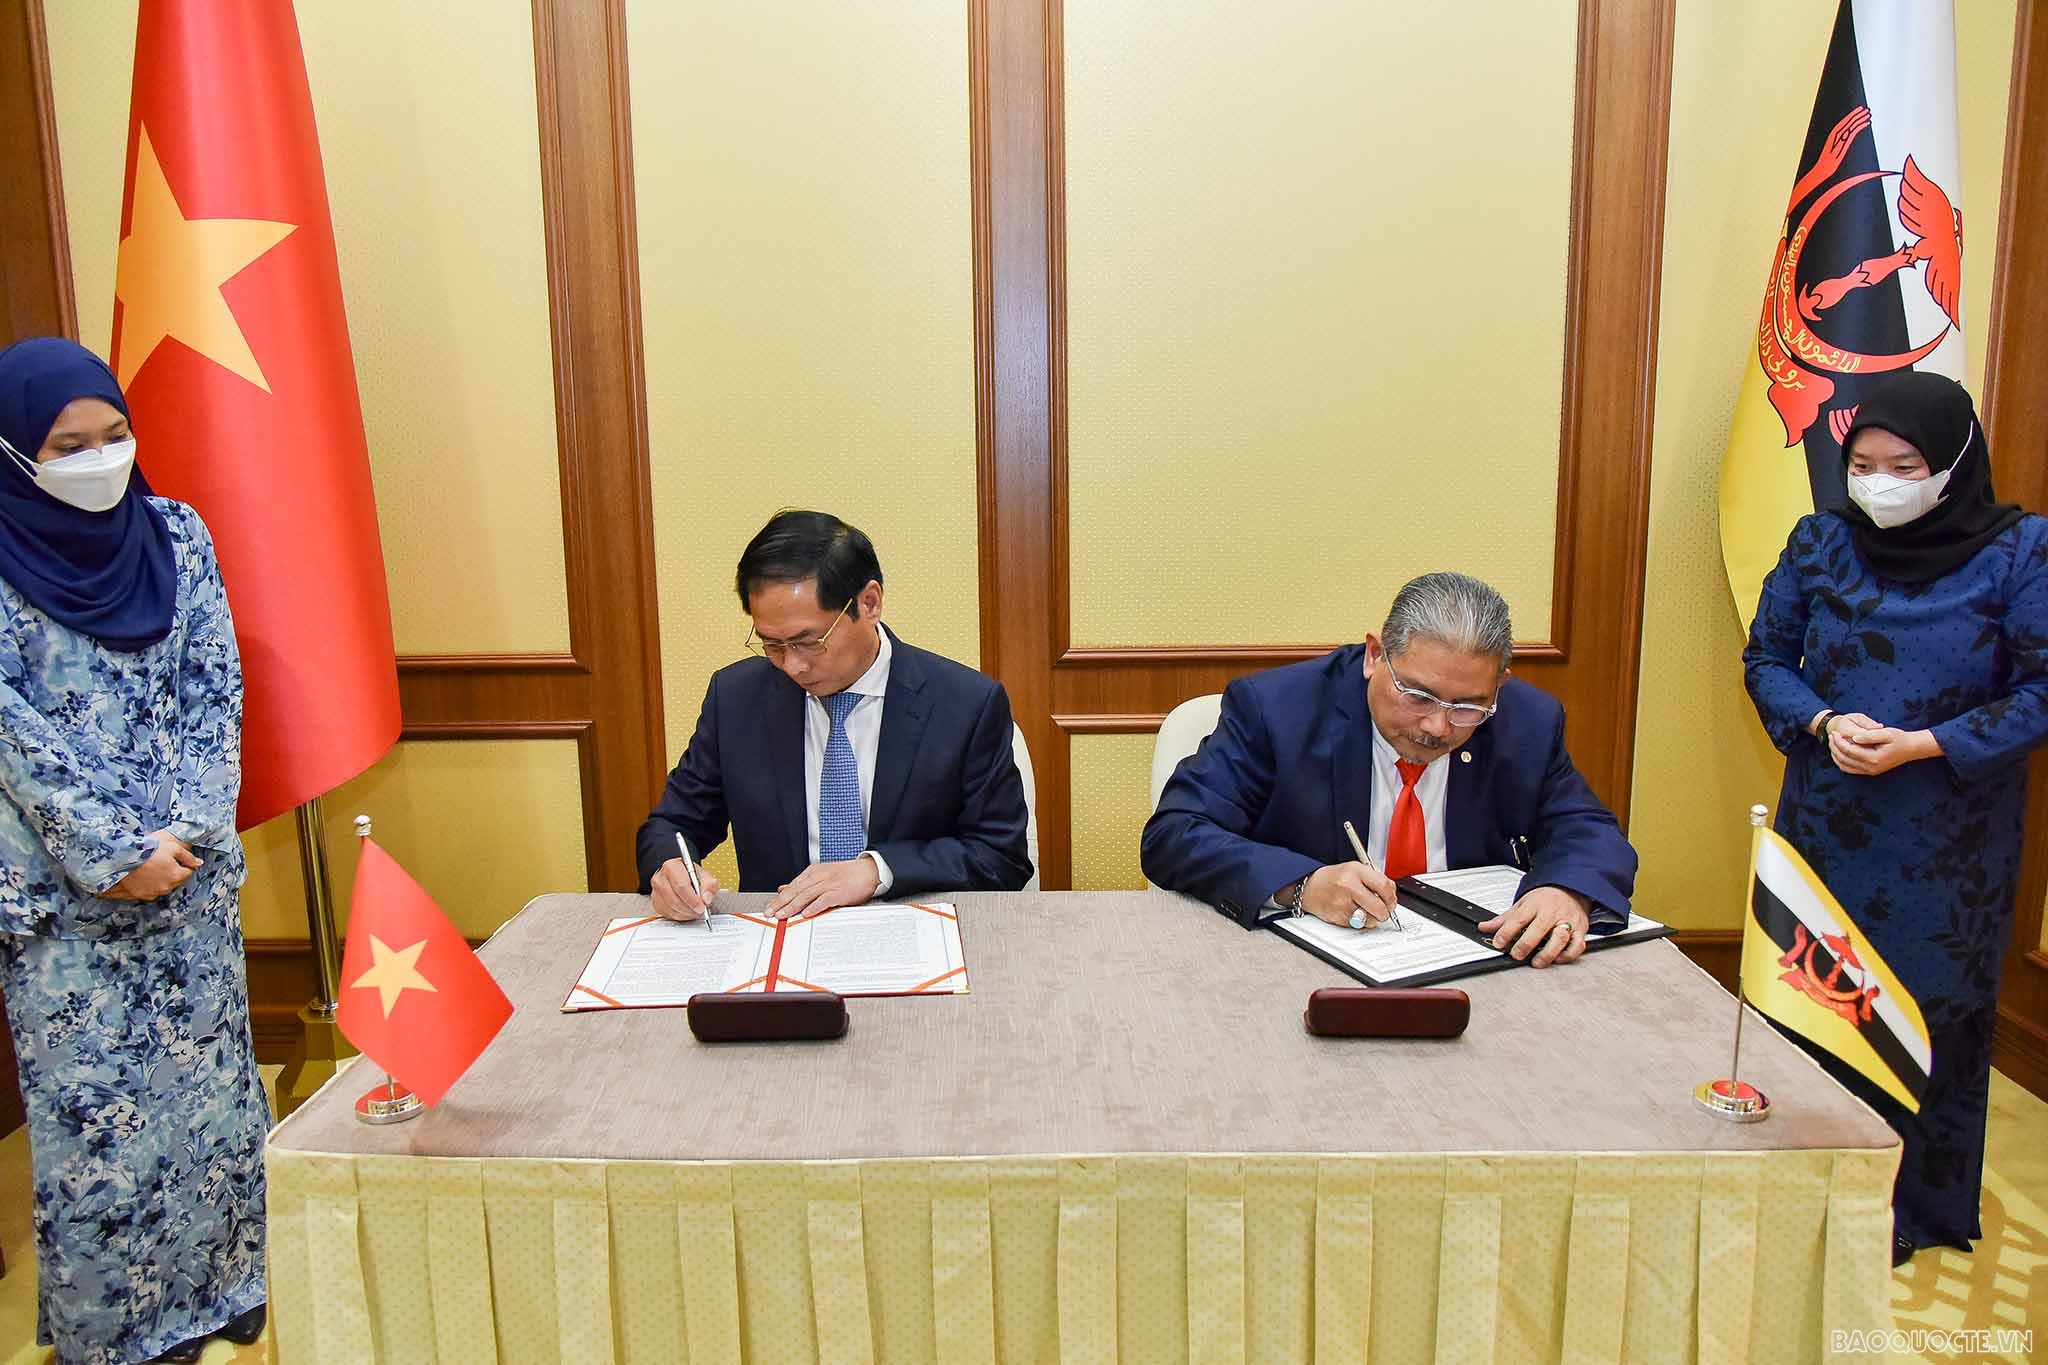 Ngay sau kỳ họp, hai Bộ trưởng Ngoại giao đã ký Biên bản thỏa thuận Kỳ họp lần thứ 2 Ủy ban hỗn hợp về Hợp tác song phương Việt Nam-Brunei Darussalam.